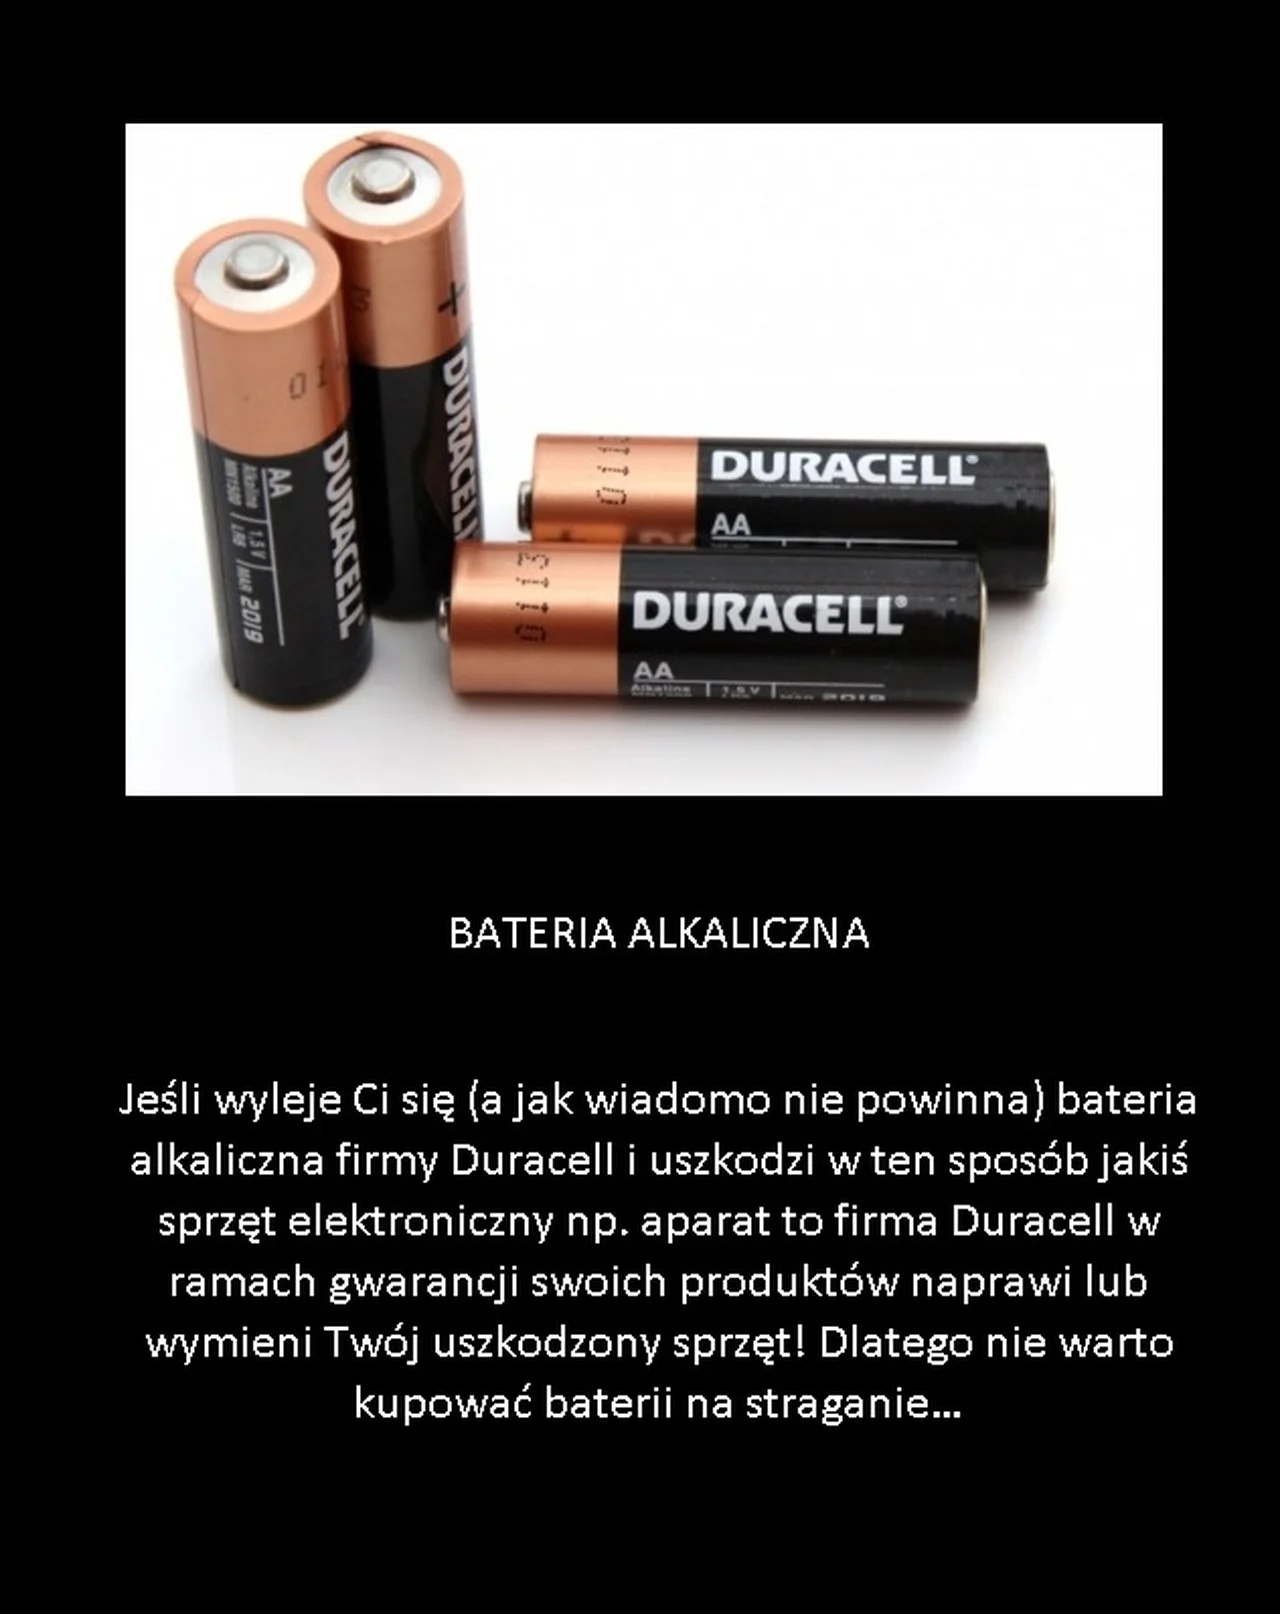 Jeśli wyleje Ci się bateria alkaliczna...